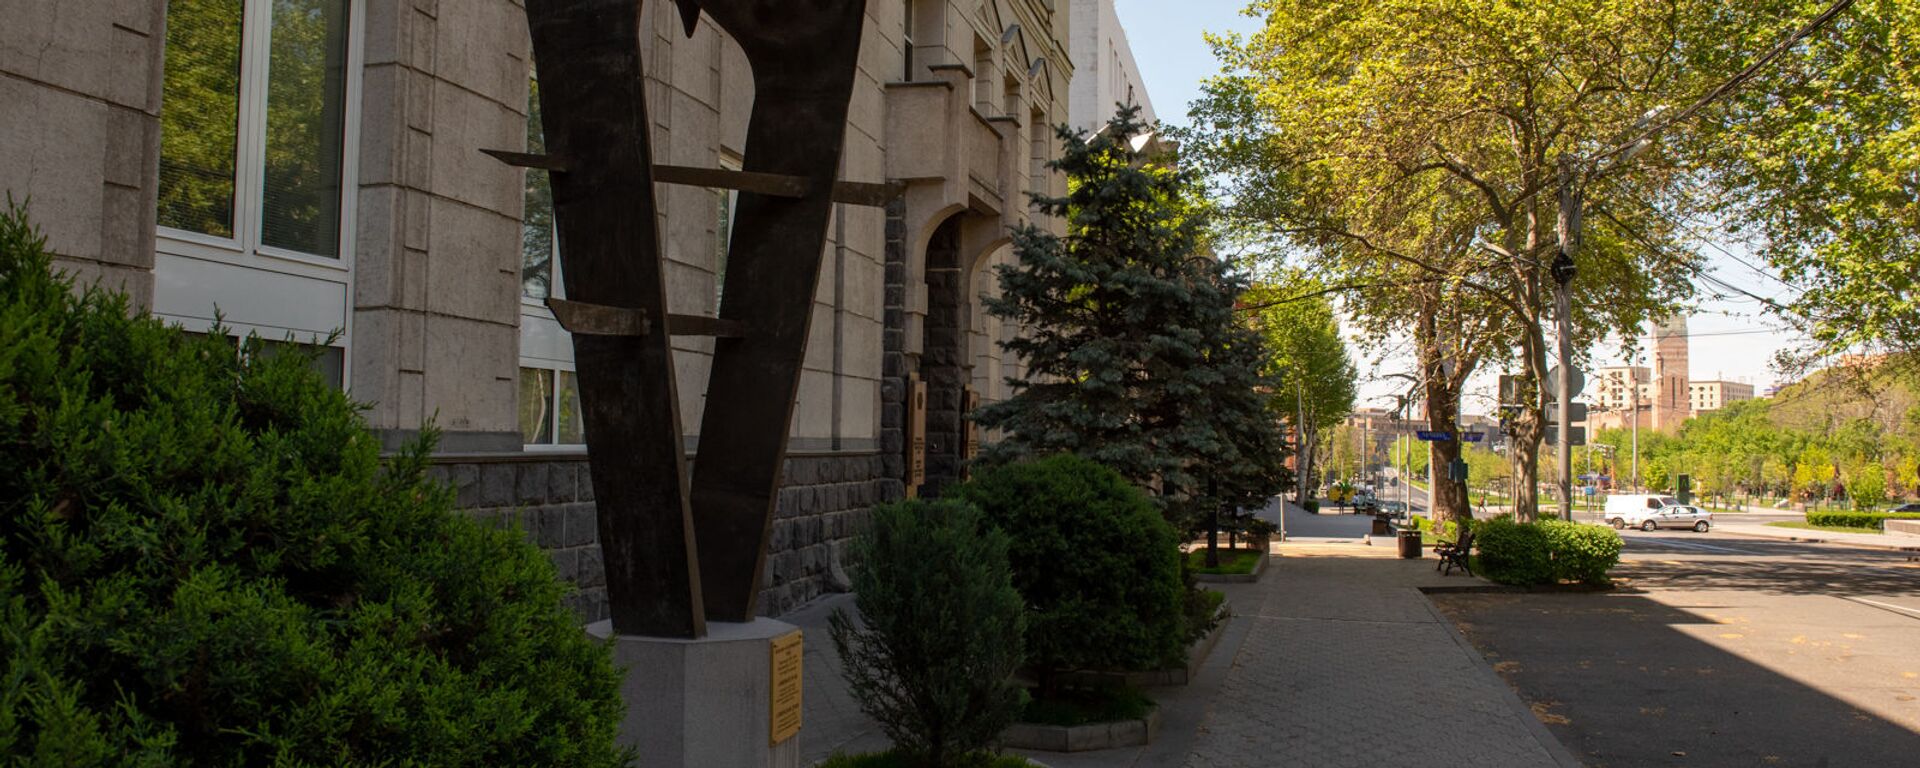 Скульптура армянскому драму перед зданием Центрального Банка Армении - Sputnik Արմենիա, 1920, 04.05.2021